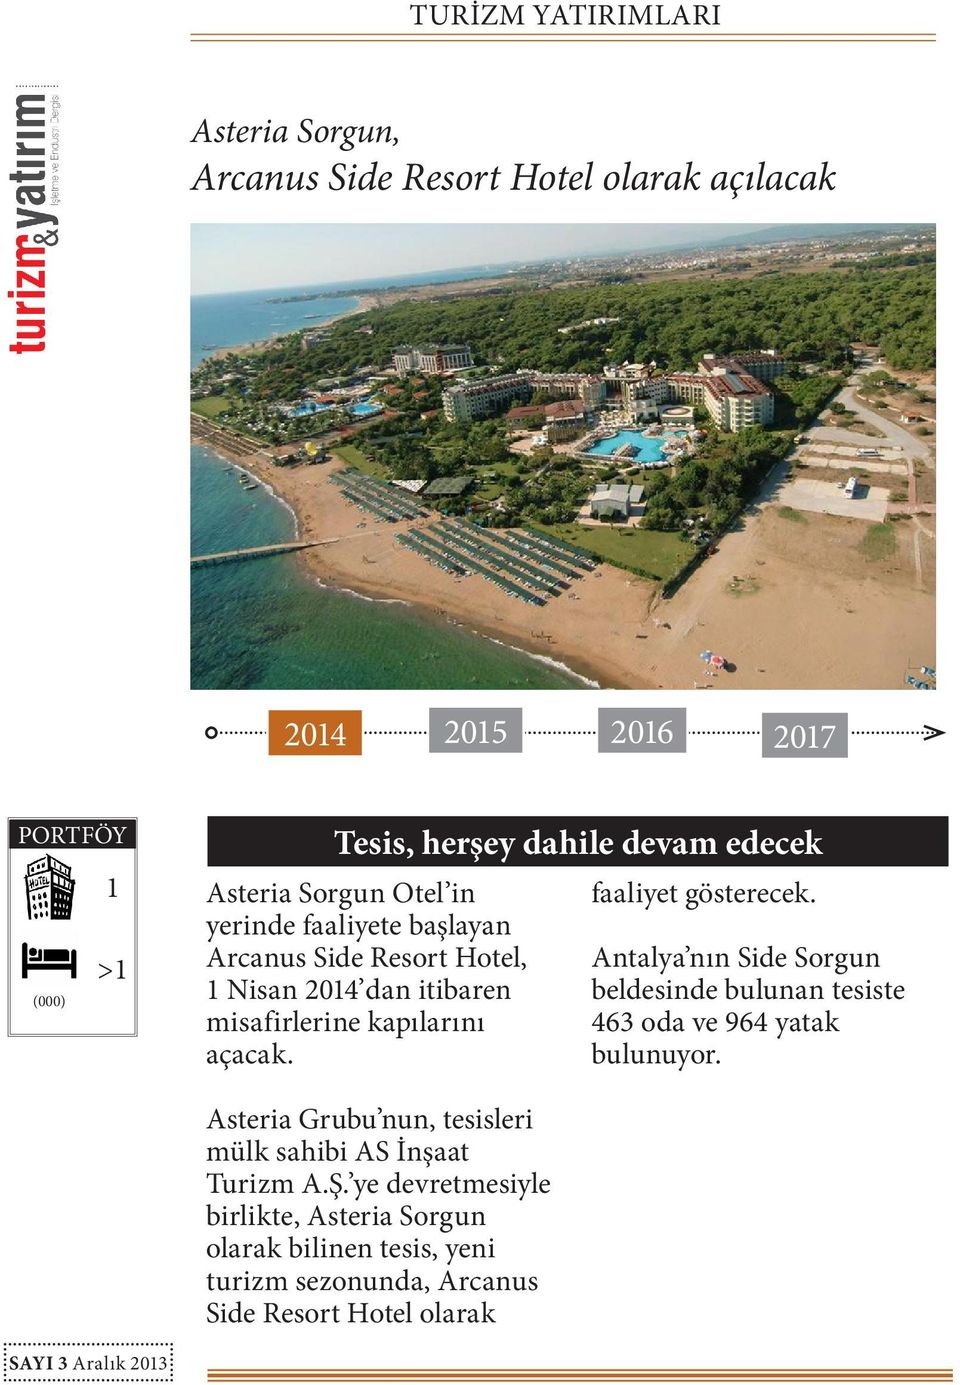 Antalya nın Side Sorgun beldesinde bulunan tesiste 463 oda ve 964 yatak bulunuyor.